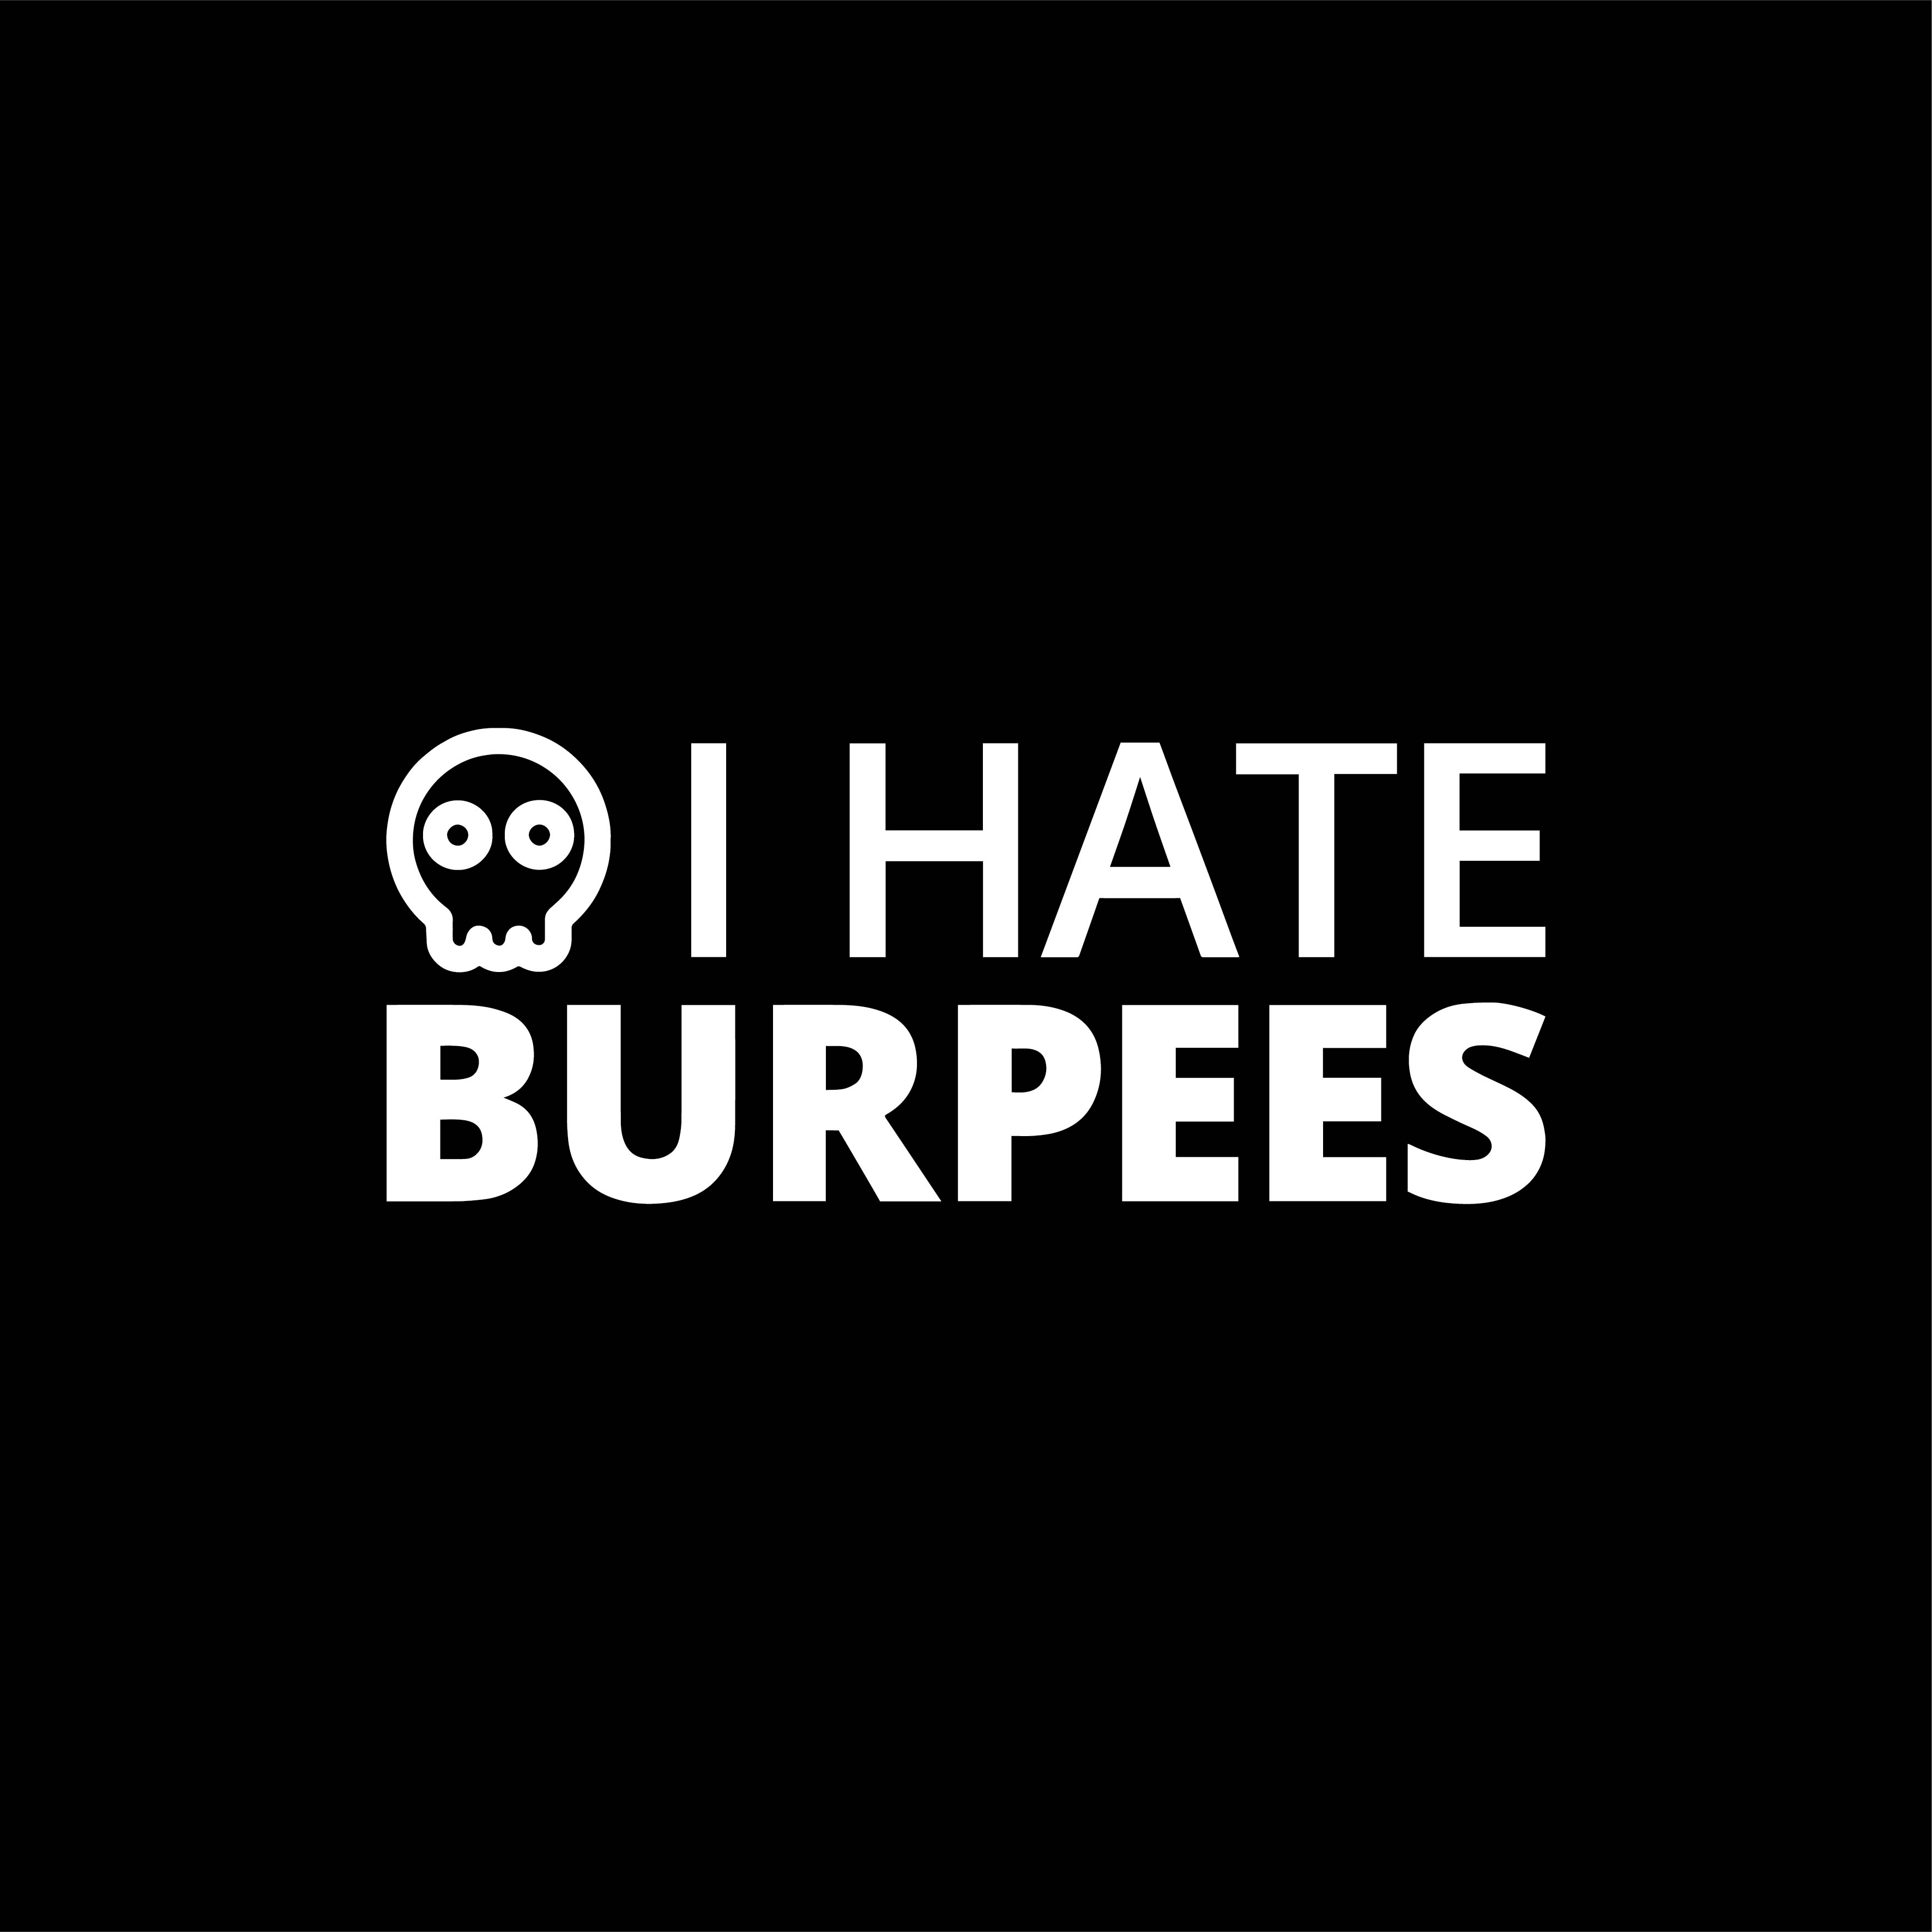 I hate burpees